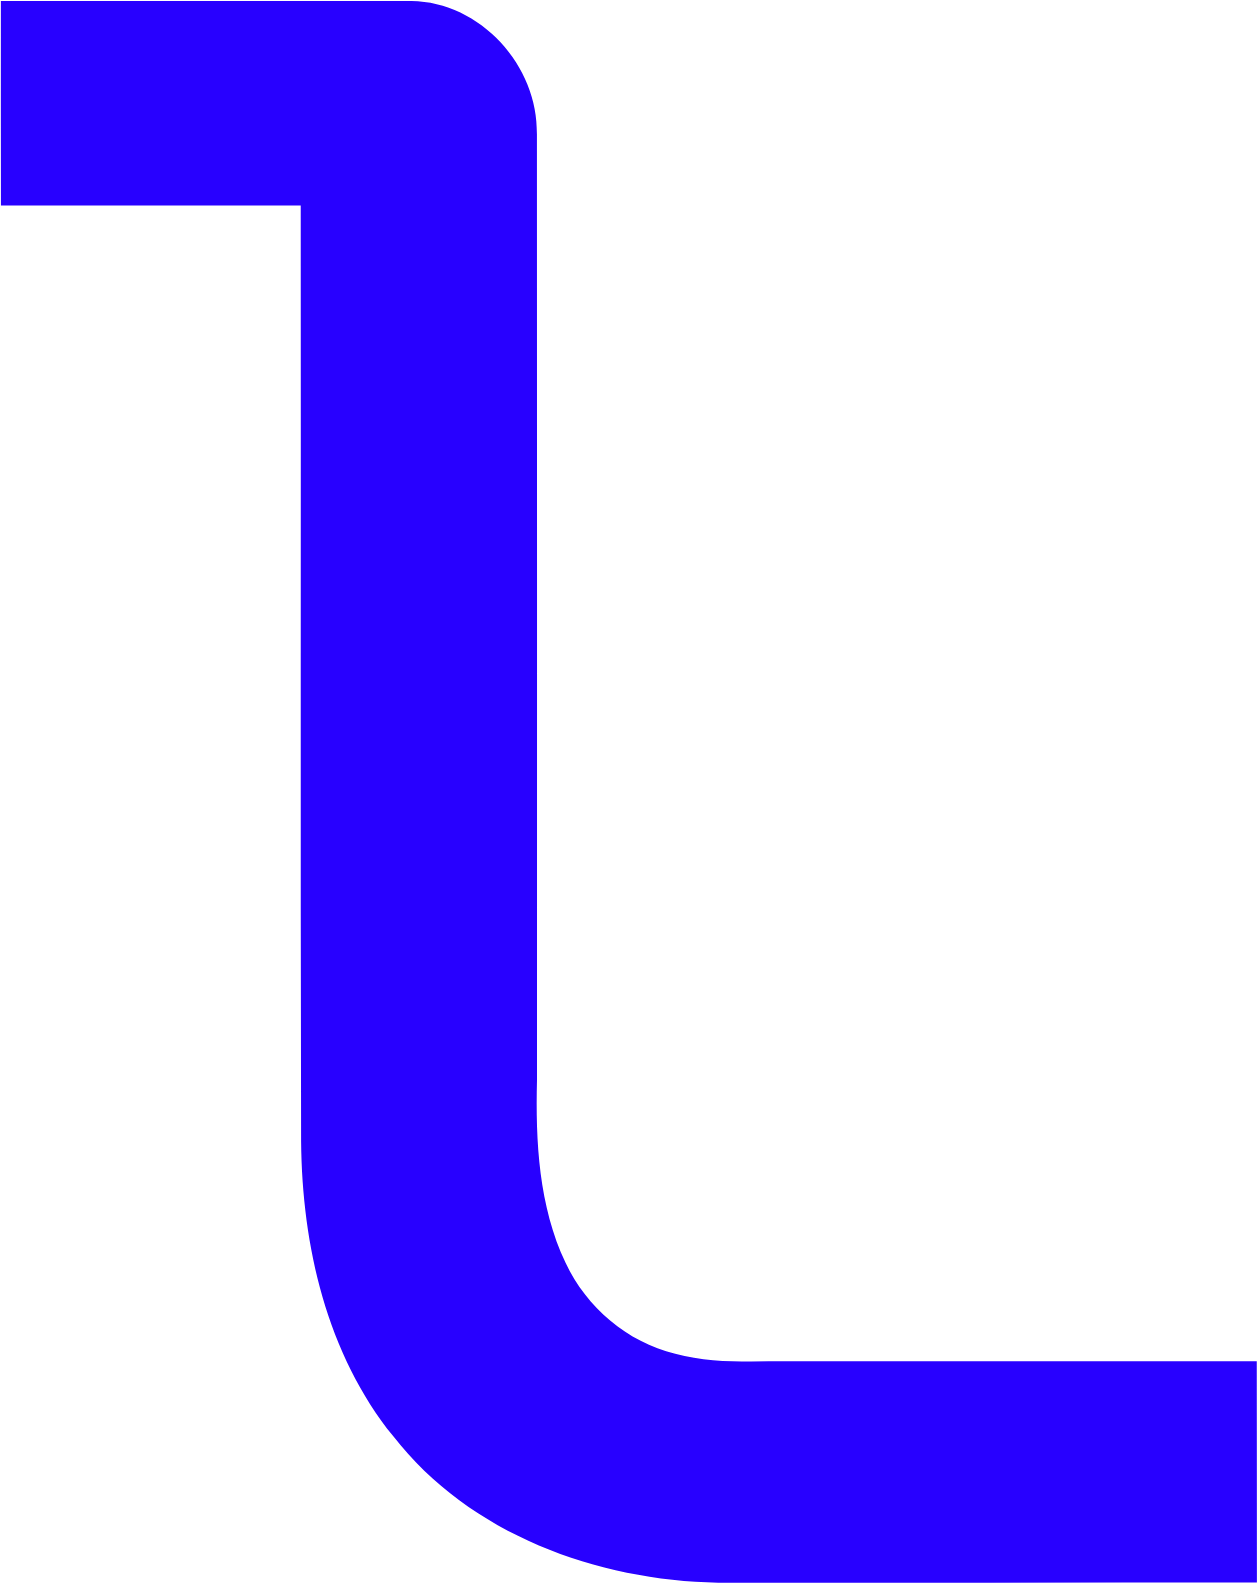 Logista (Compañía de Distribución Integral Logista) logo (PNG transparent)